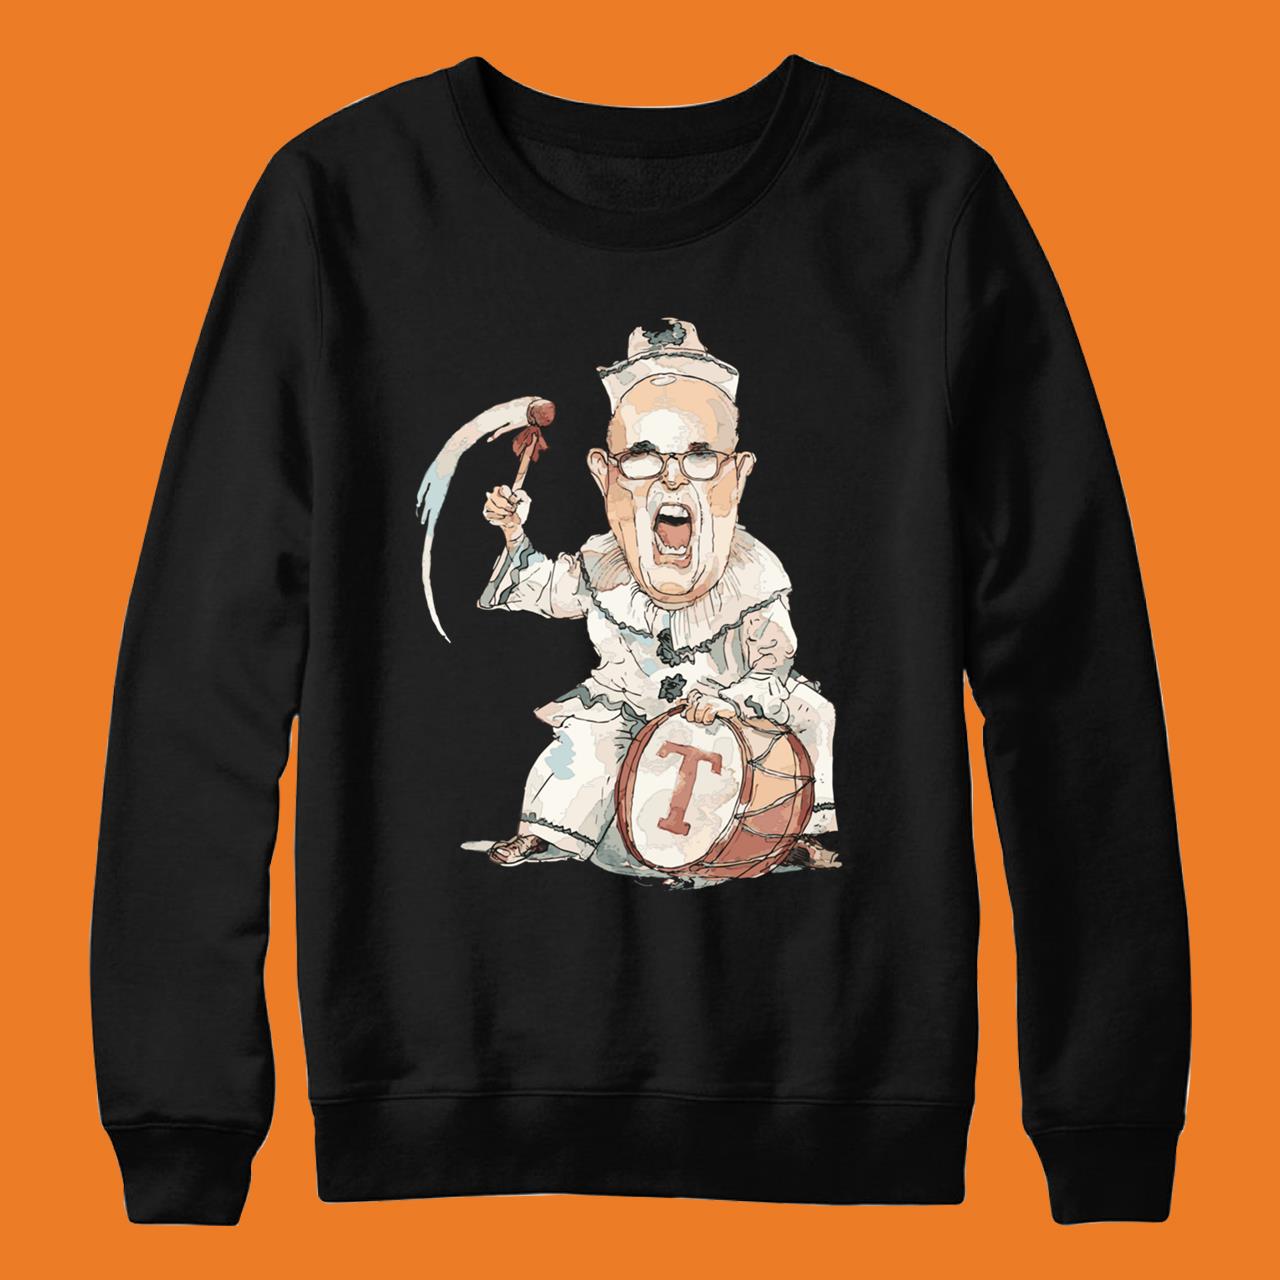 Funny Rudy Giuliani Meme T-Shirt